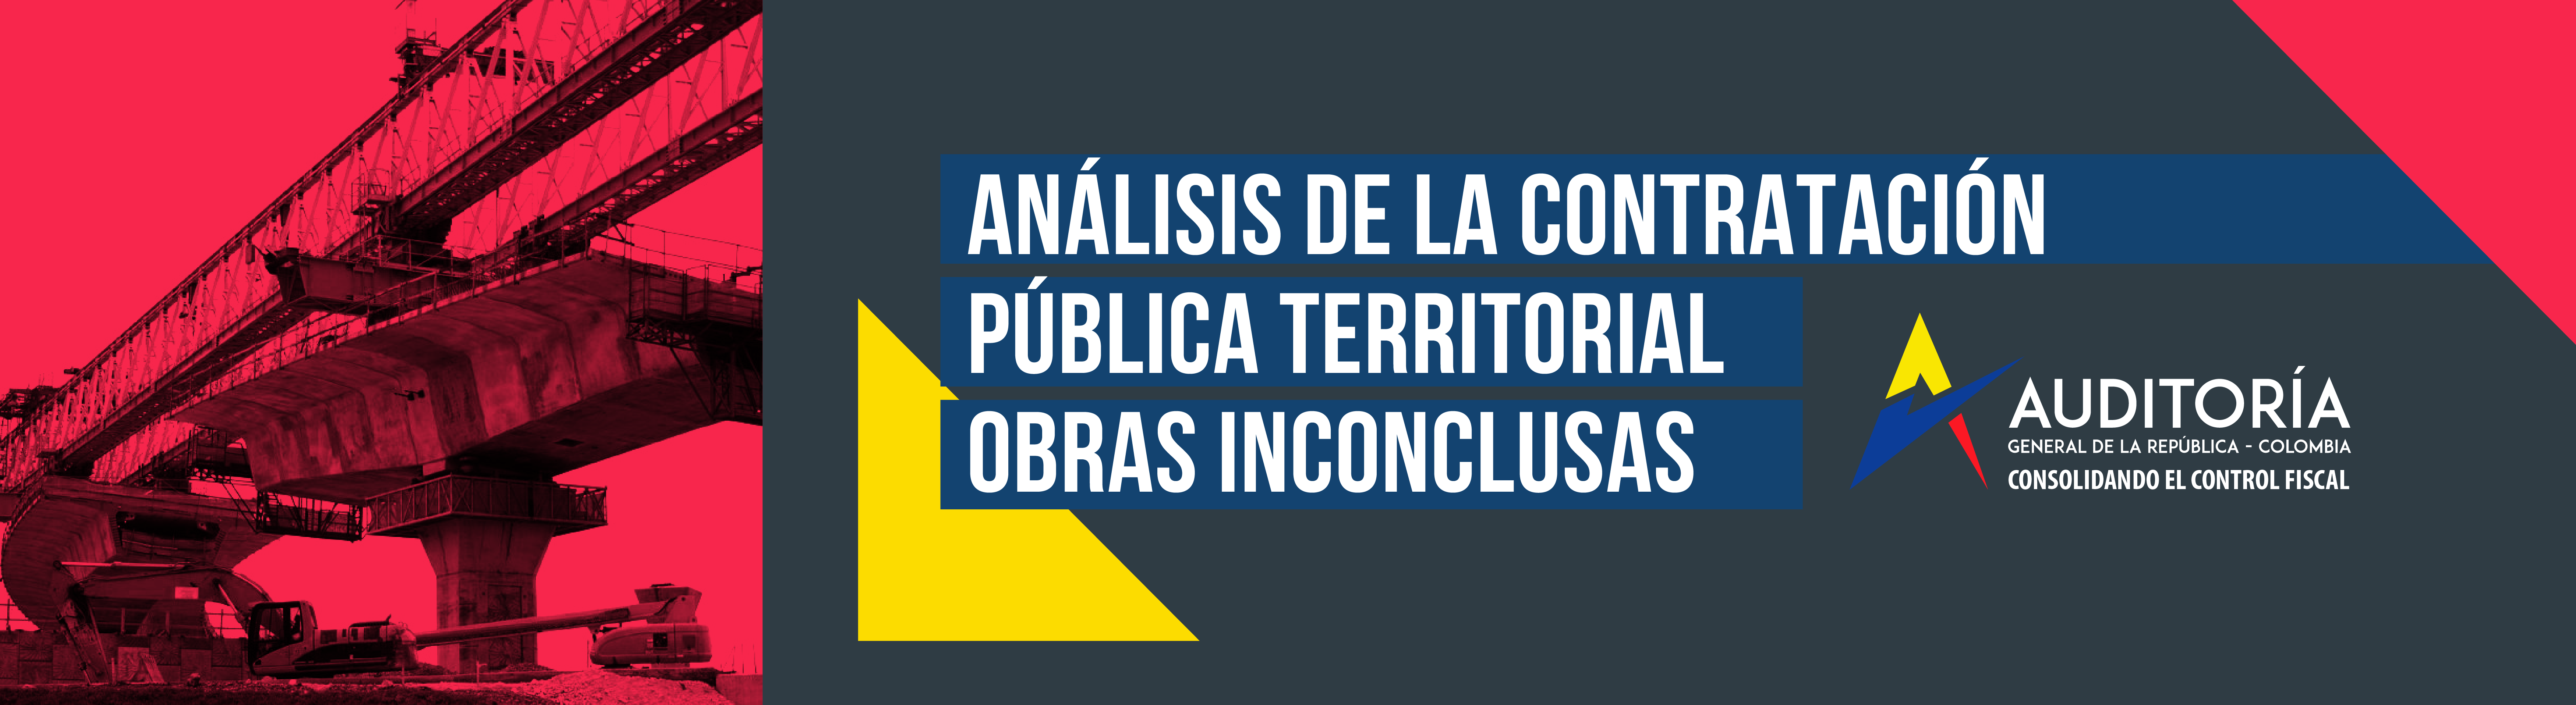 Referencia de públicación de boletín técnico: Análisis de la contratación pública territorial. Obras inconclusas. Consolidado nacional